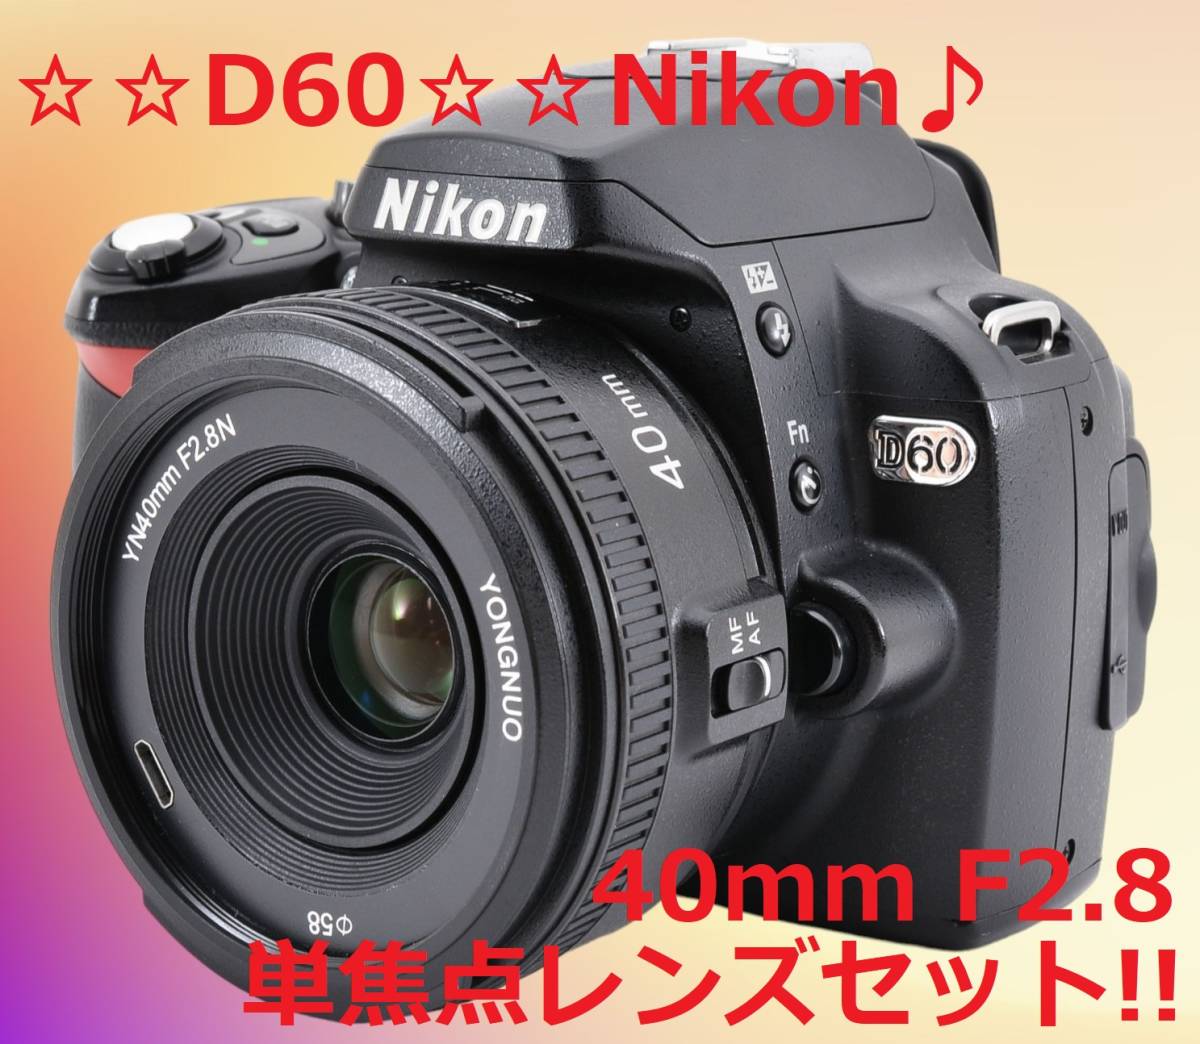 単焦点レンズセット♪ 初心者さんにもおすすめ!! Nikon D60 #6218